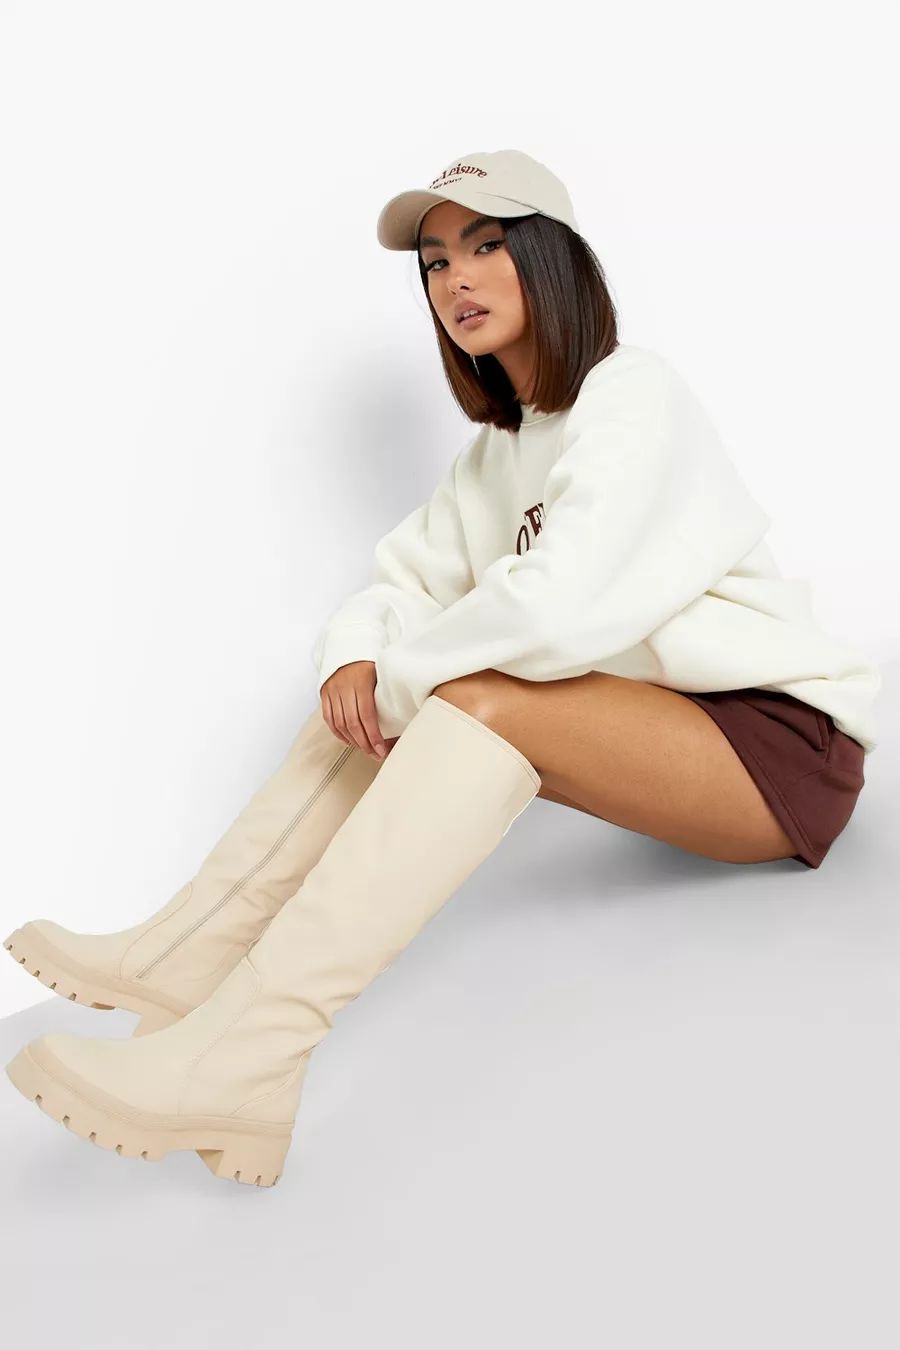 Rubber Knee High Boots | Boohoo.com (US & CA)